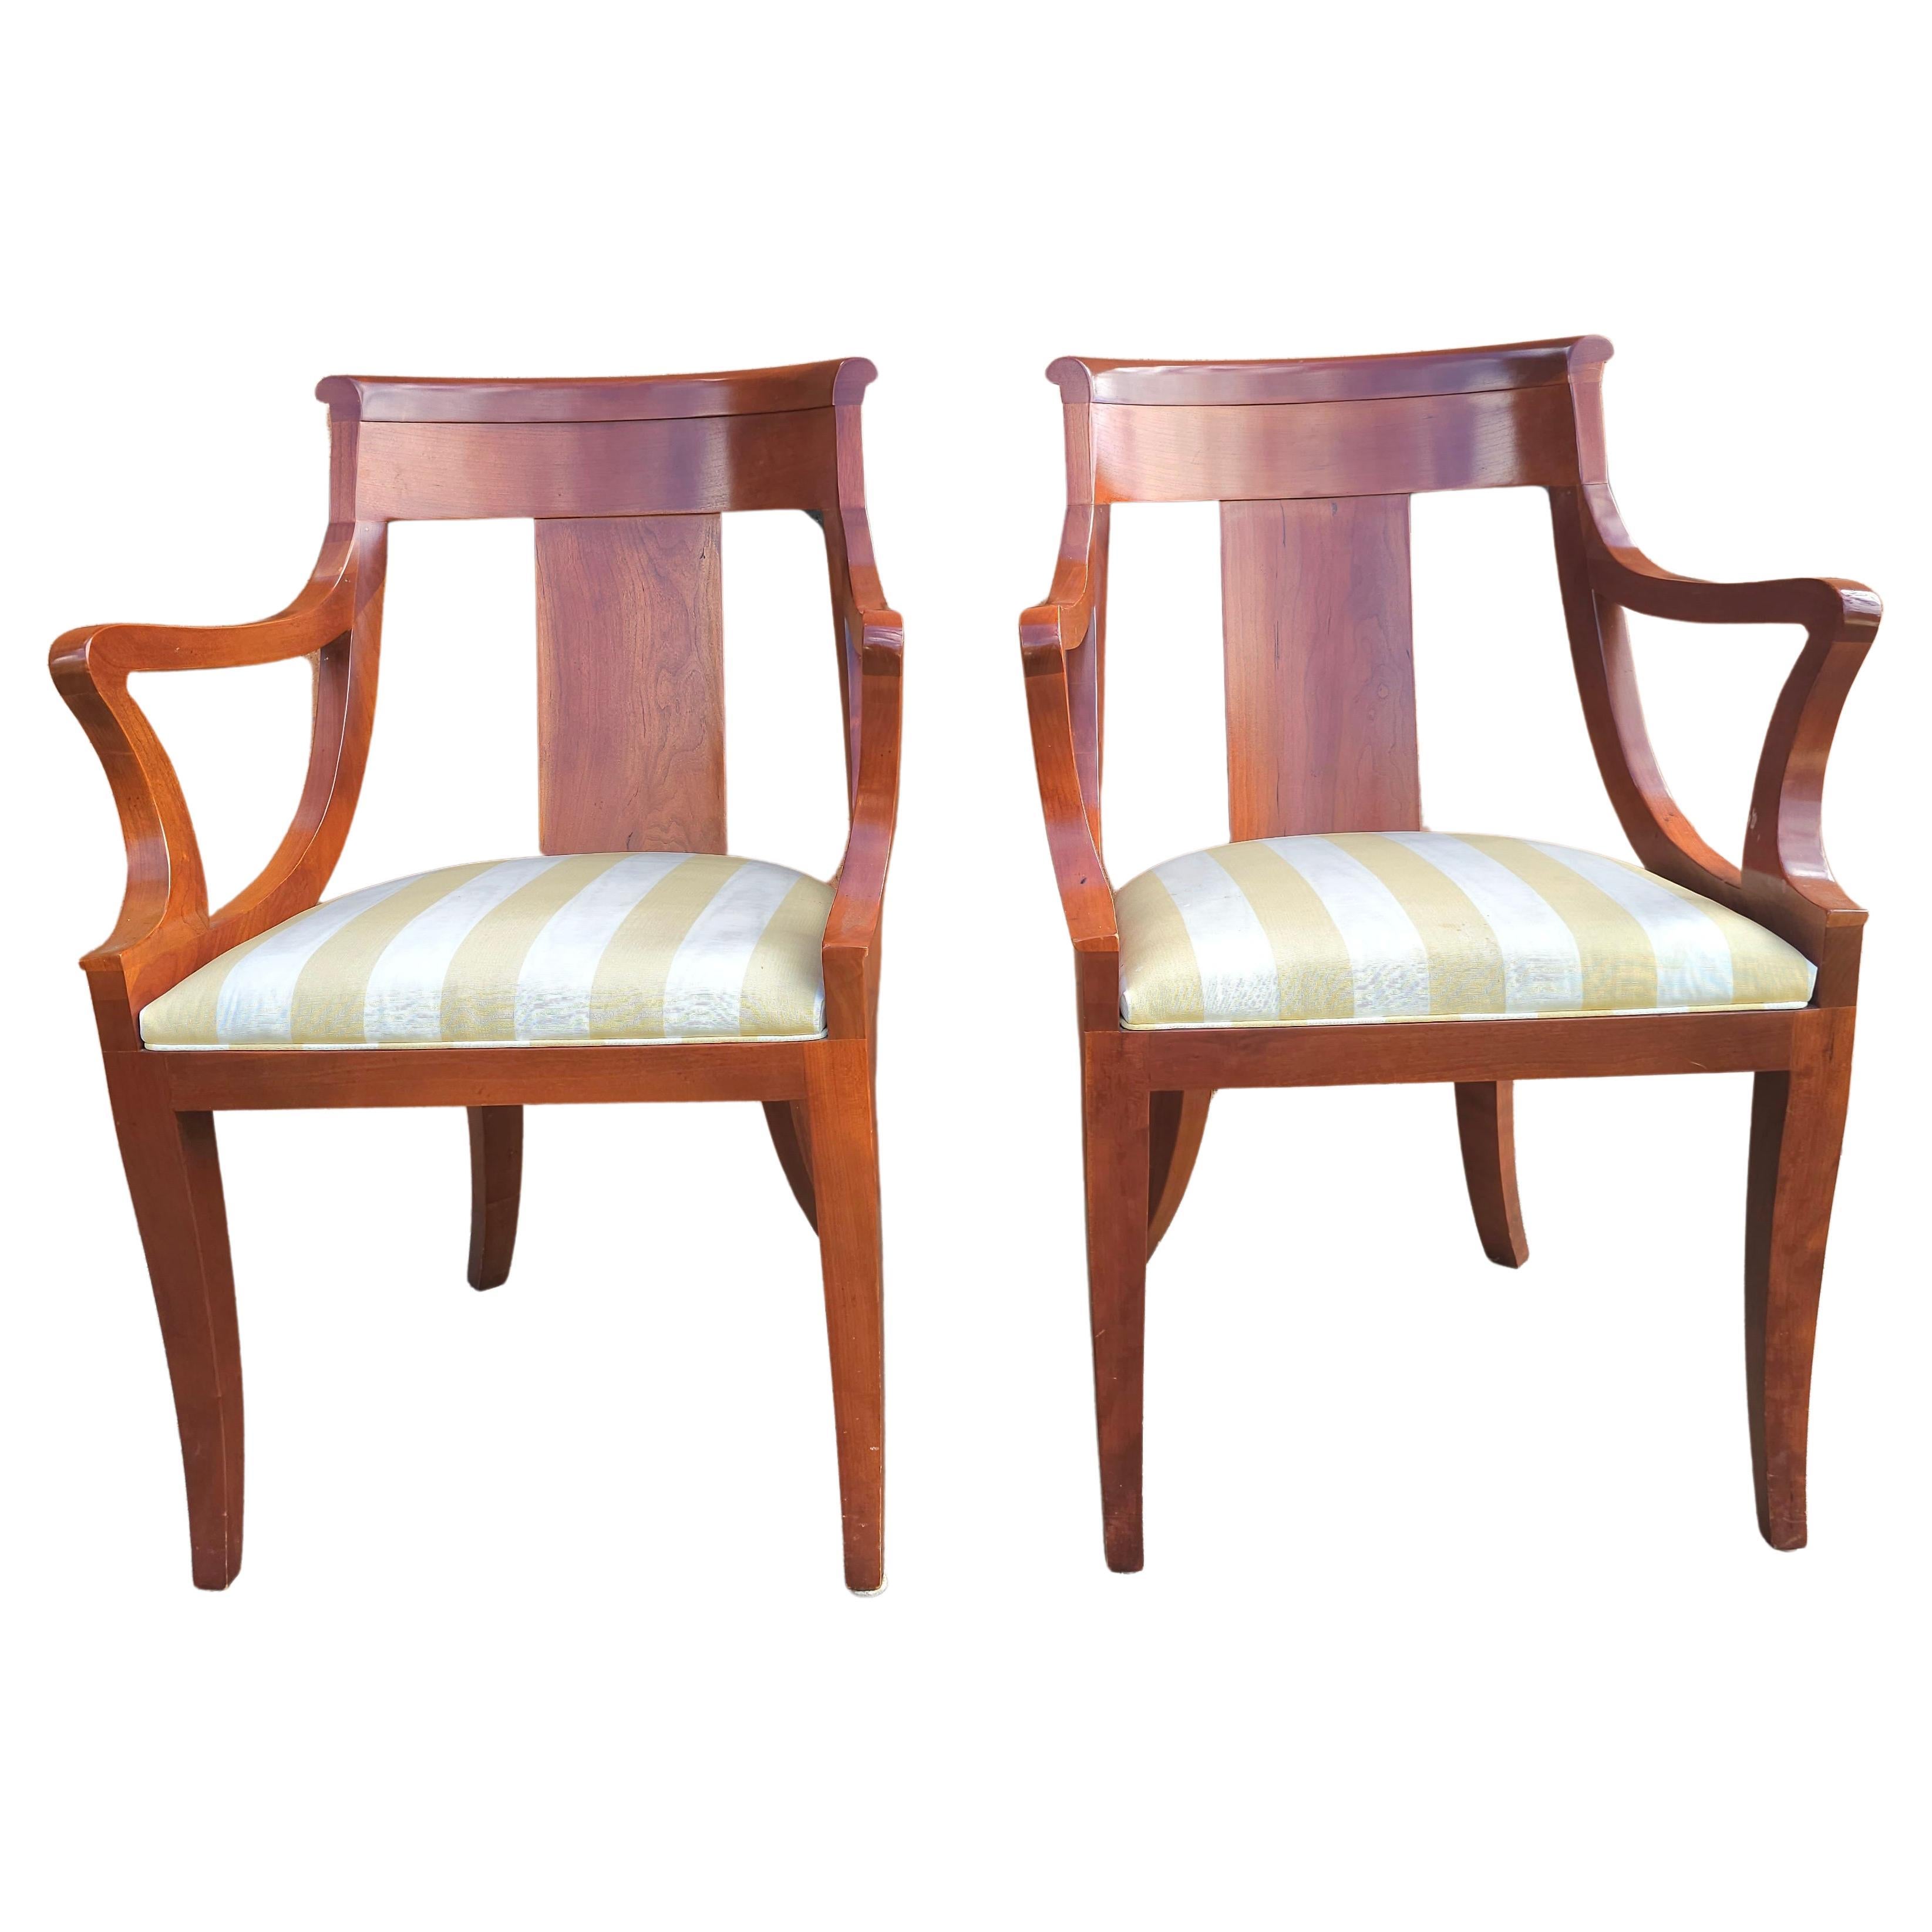 Paar Baker Furniture Beidermeier Klismos Style Kirschbaum Esszimmerstühle. Eine fantastische Kombination aus dem traditionellen Biedemeir- und dem Klismos-Stuhl. Diese Auflistung ist für das Paar und es 4 Paare zur Verfügung, 3 Paare der Seite 